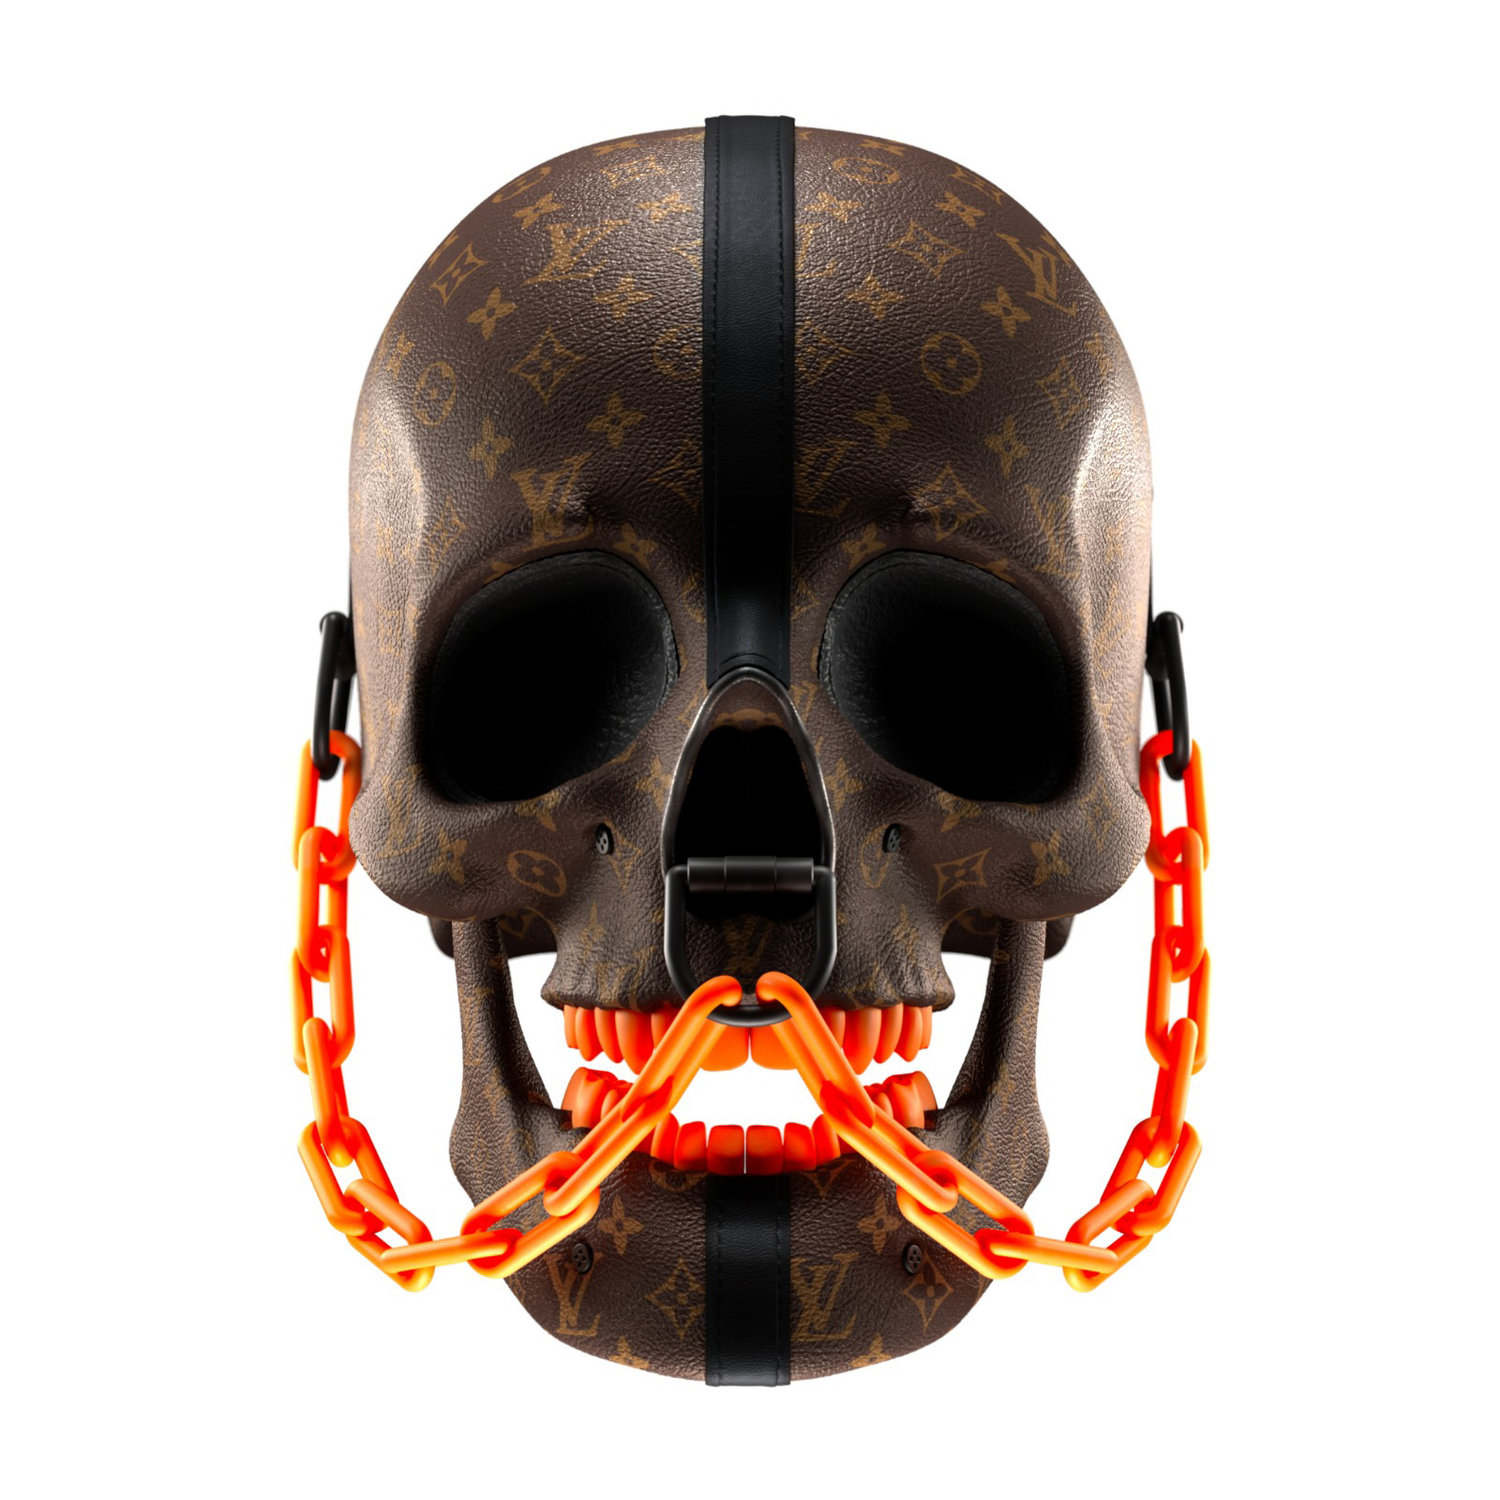 Louis Vuitton - Skull 